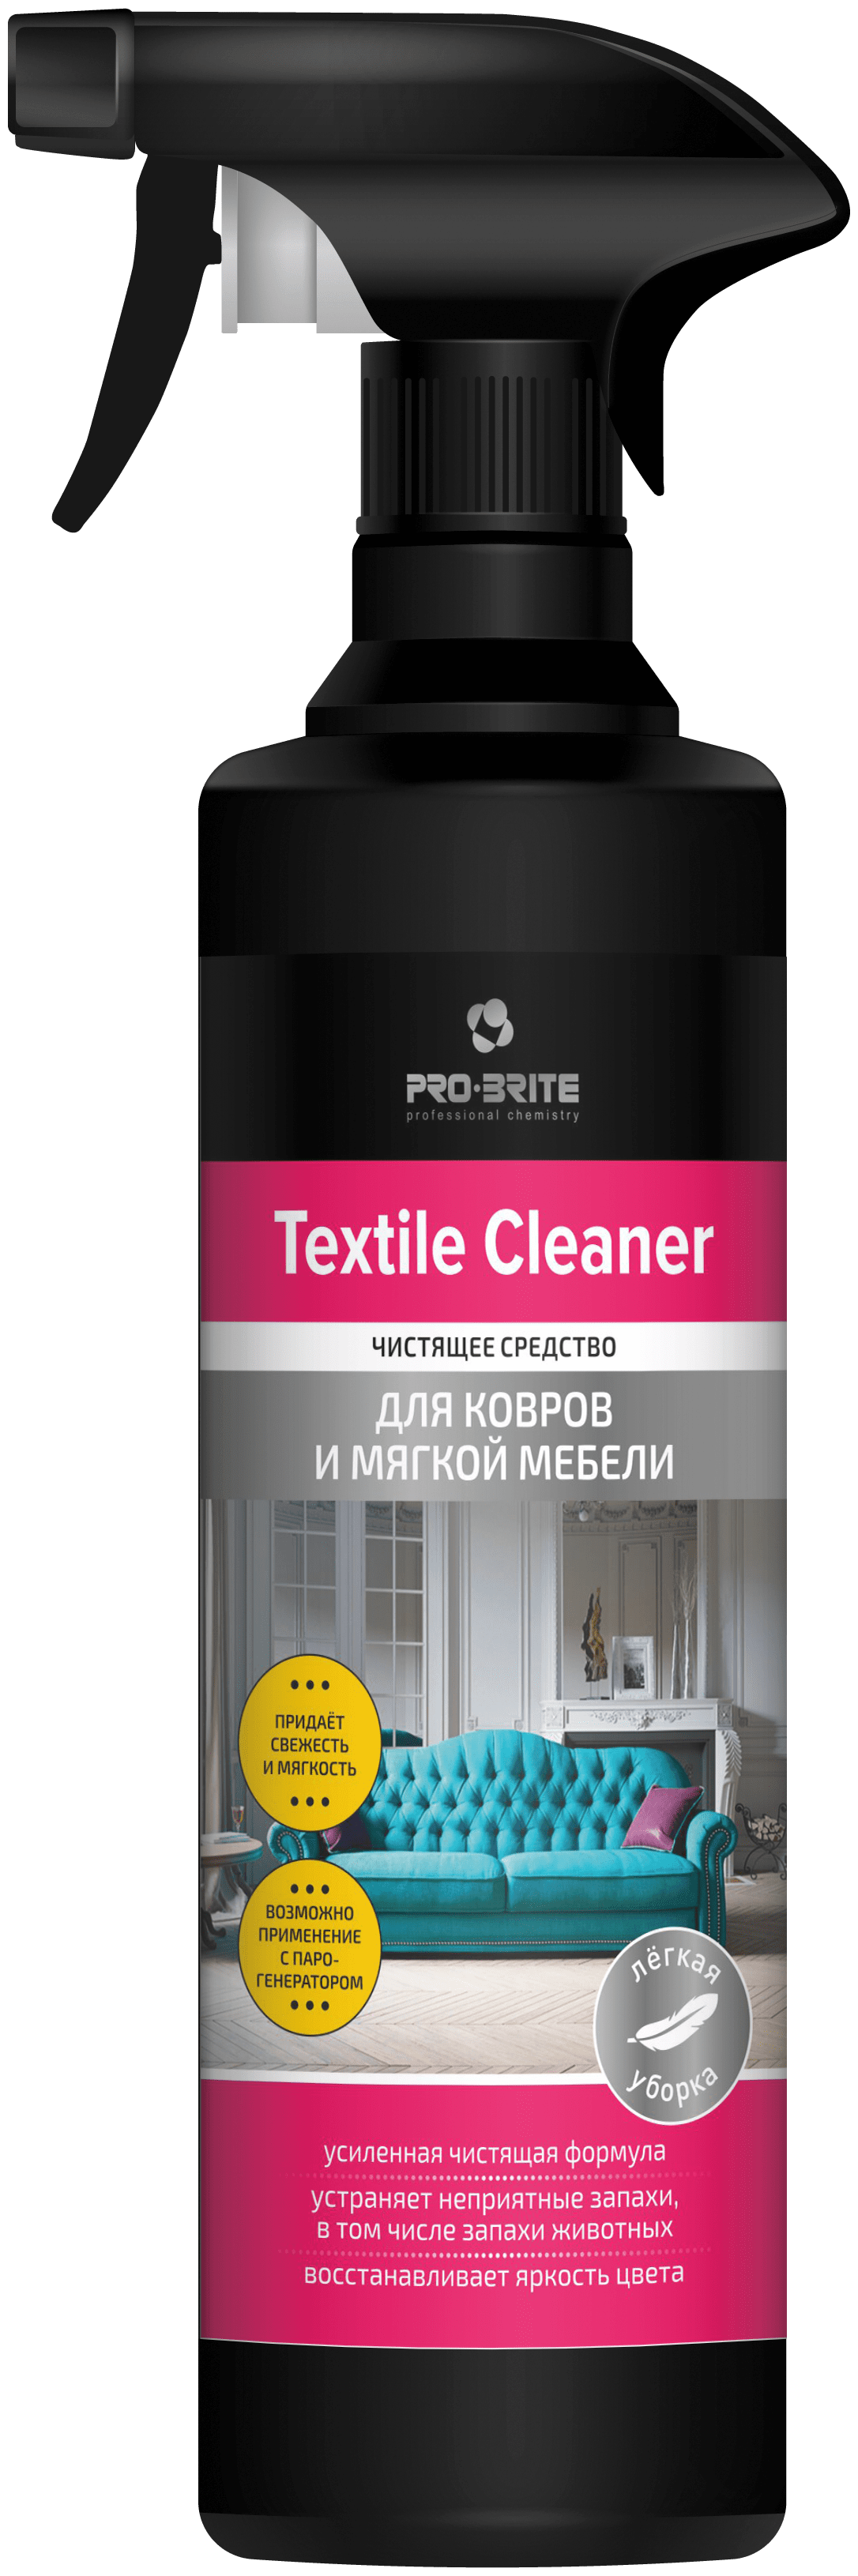 Pro-Brite Textile cleaner Чистящее средство для ковров и мягкой мебели 500мл.